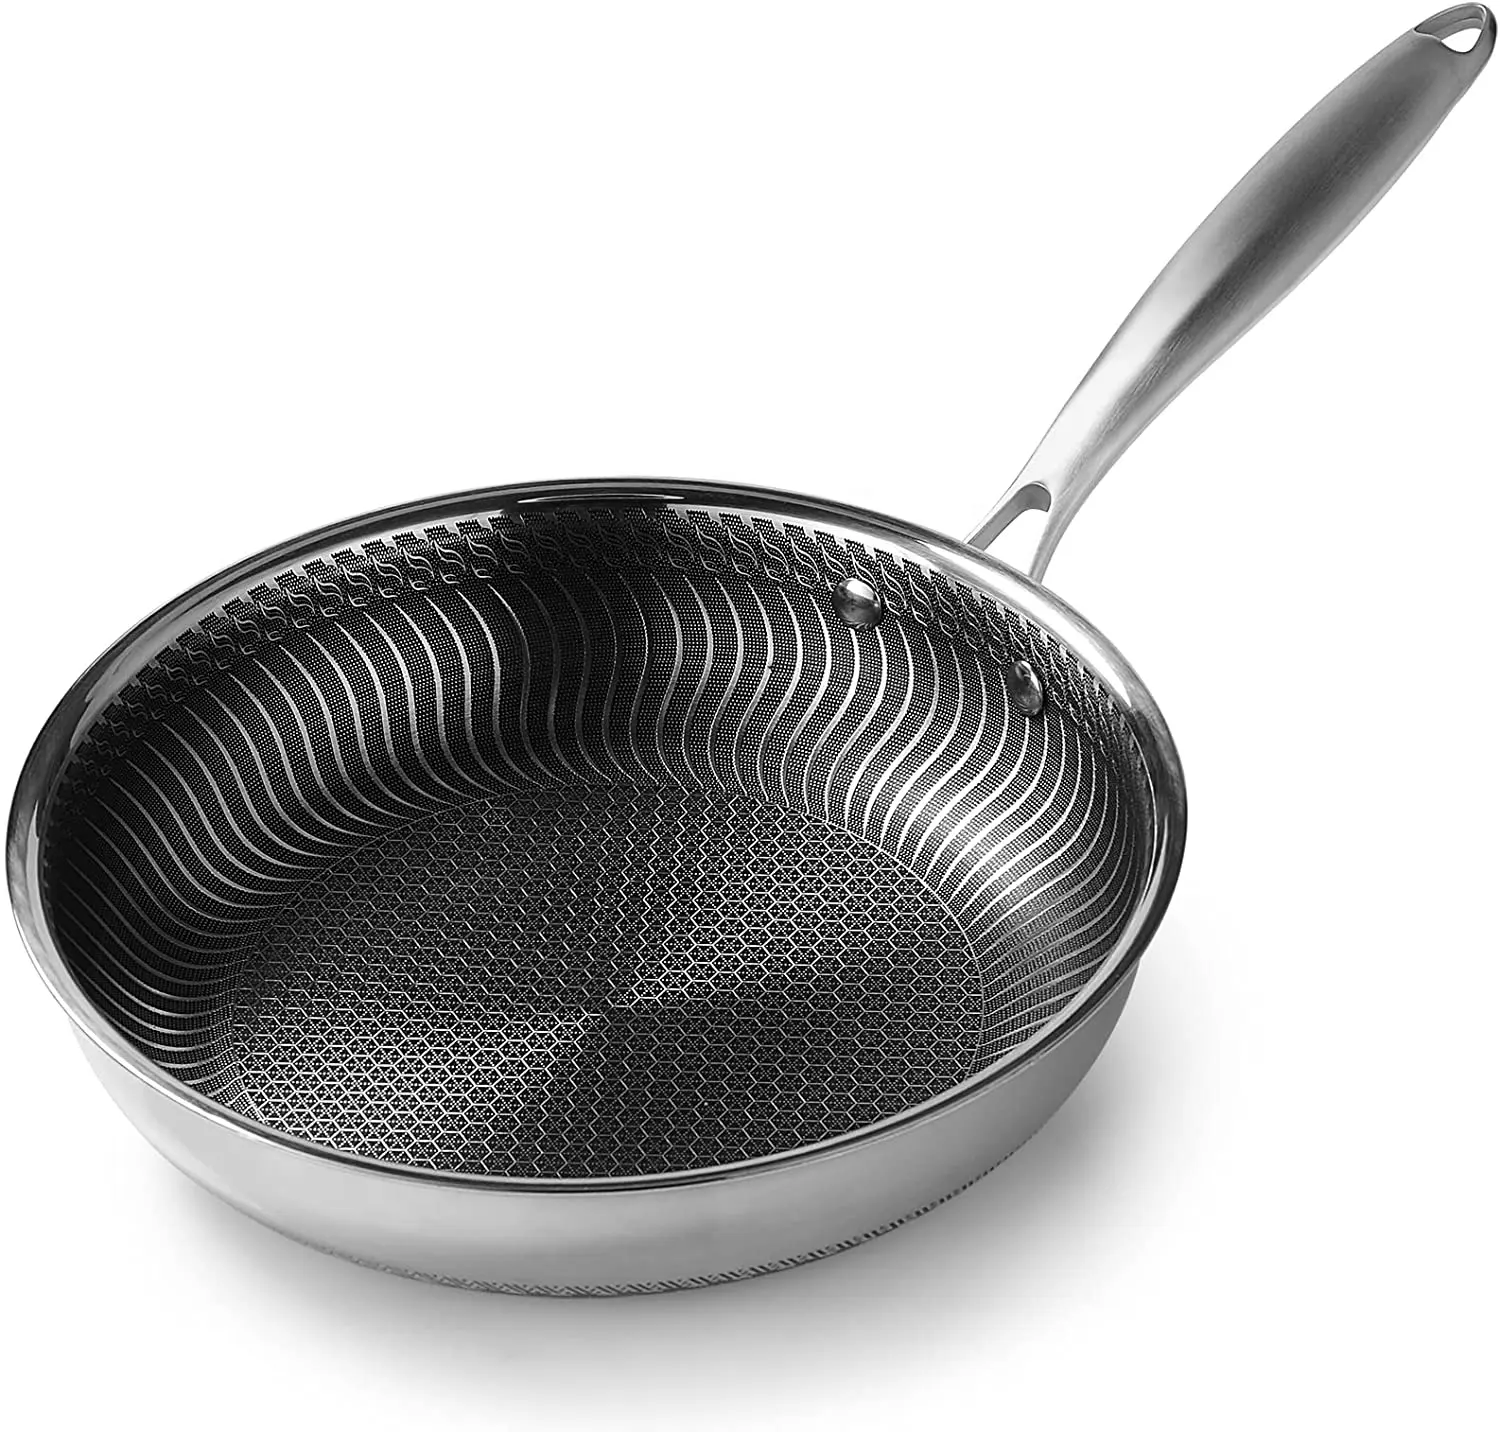 Food Grade triply acciaio inossidabile 304 grill pan a nido d'ape padella antiaderente manico in acciaio cucina domestica cottura wok